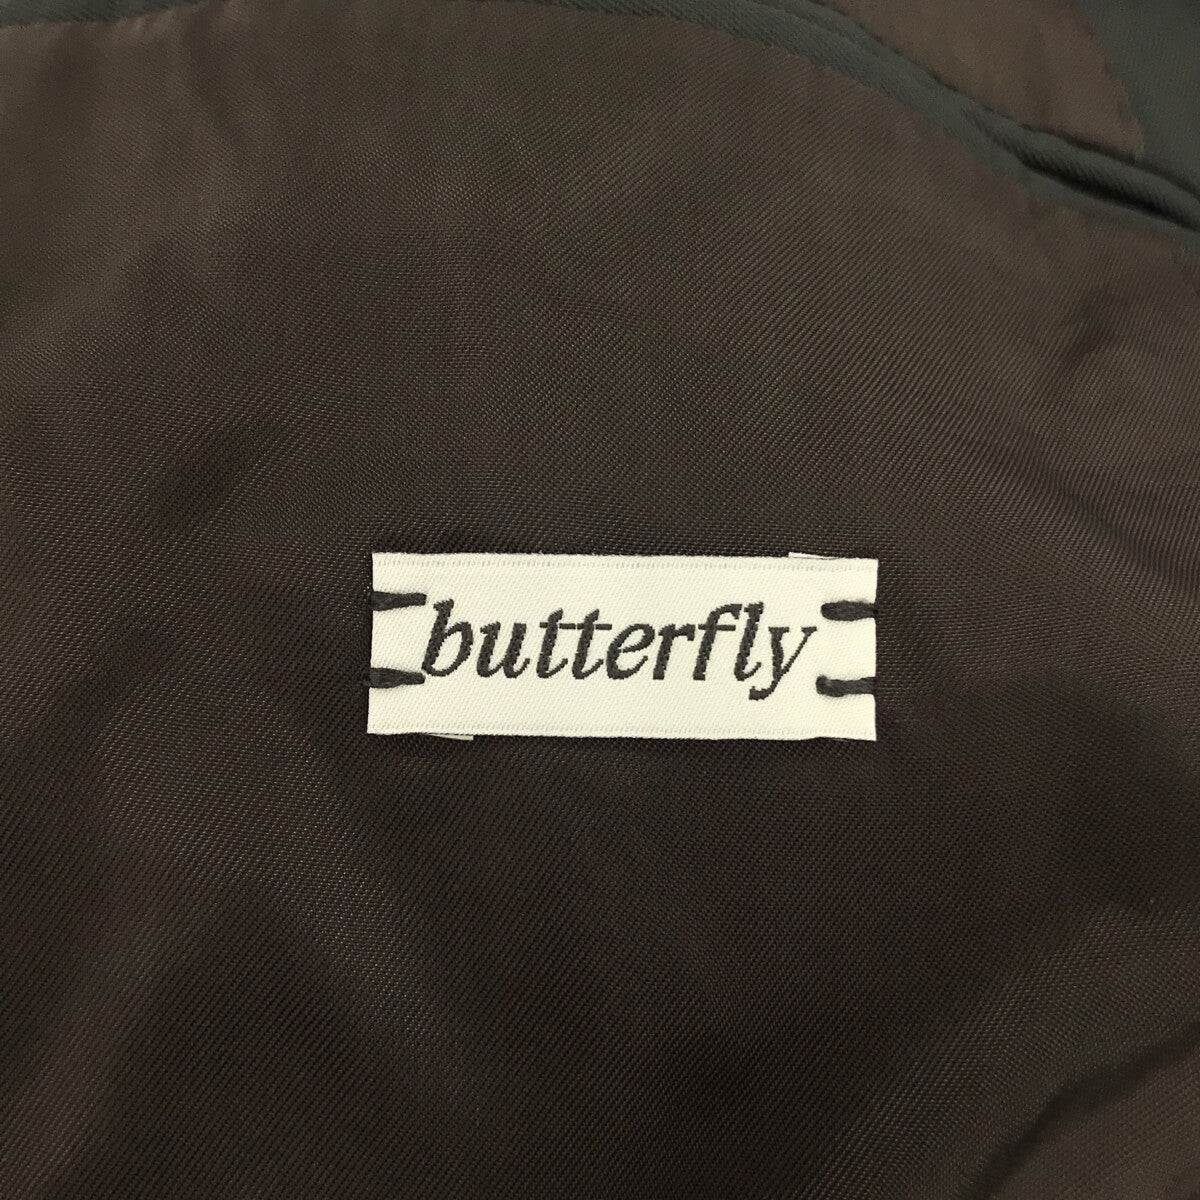 CARUSO Butterfly 3B Jacket GZS200ZN カルーゾ バタフライ3Bジャケット テーラードジャケット ノッチドラペル 本切羽 ダークネイビー サイズ50【230508】【-B】【me04】